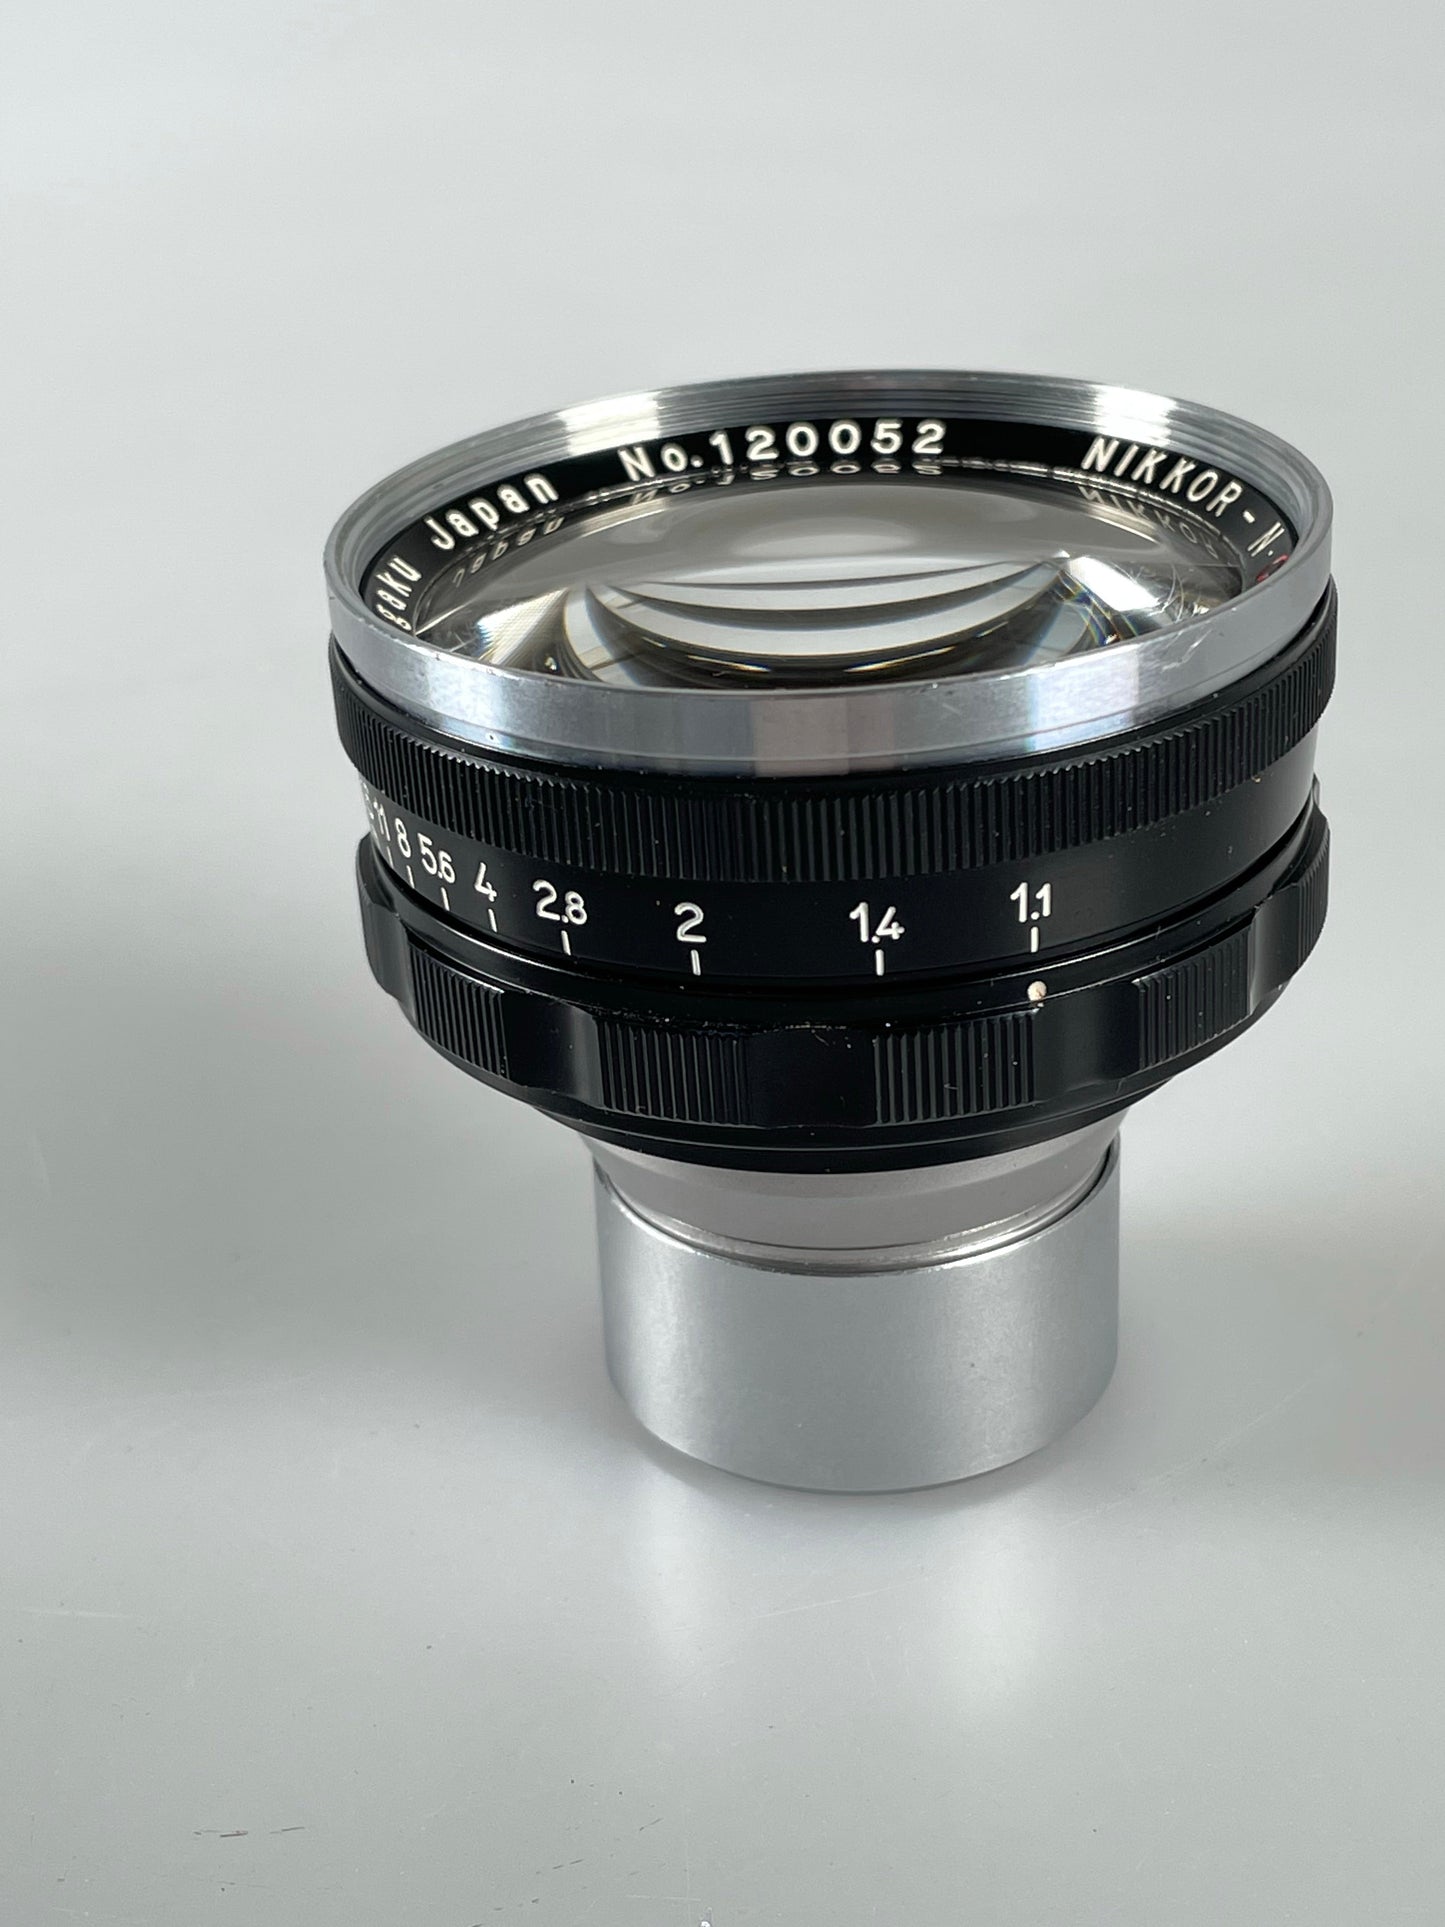 CLA'd  Nippon Kogaku Nikon S Nikkor-NC 50mm 5cm f1.1 rangefinder lens case and caps